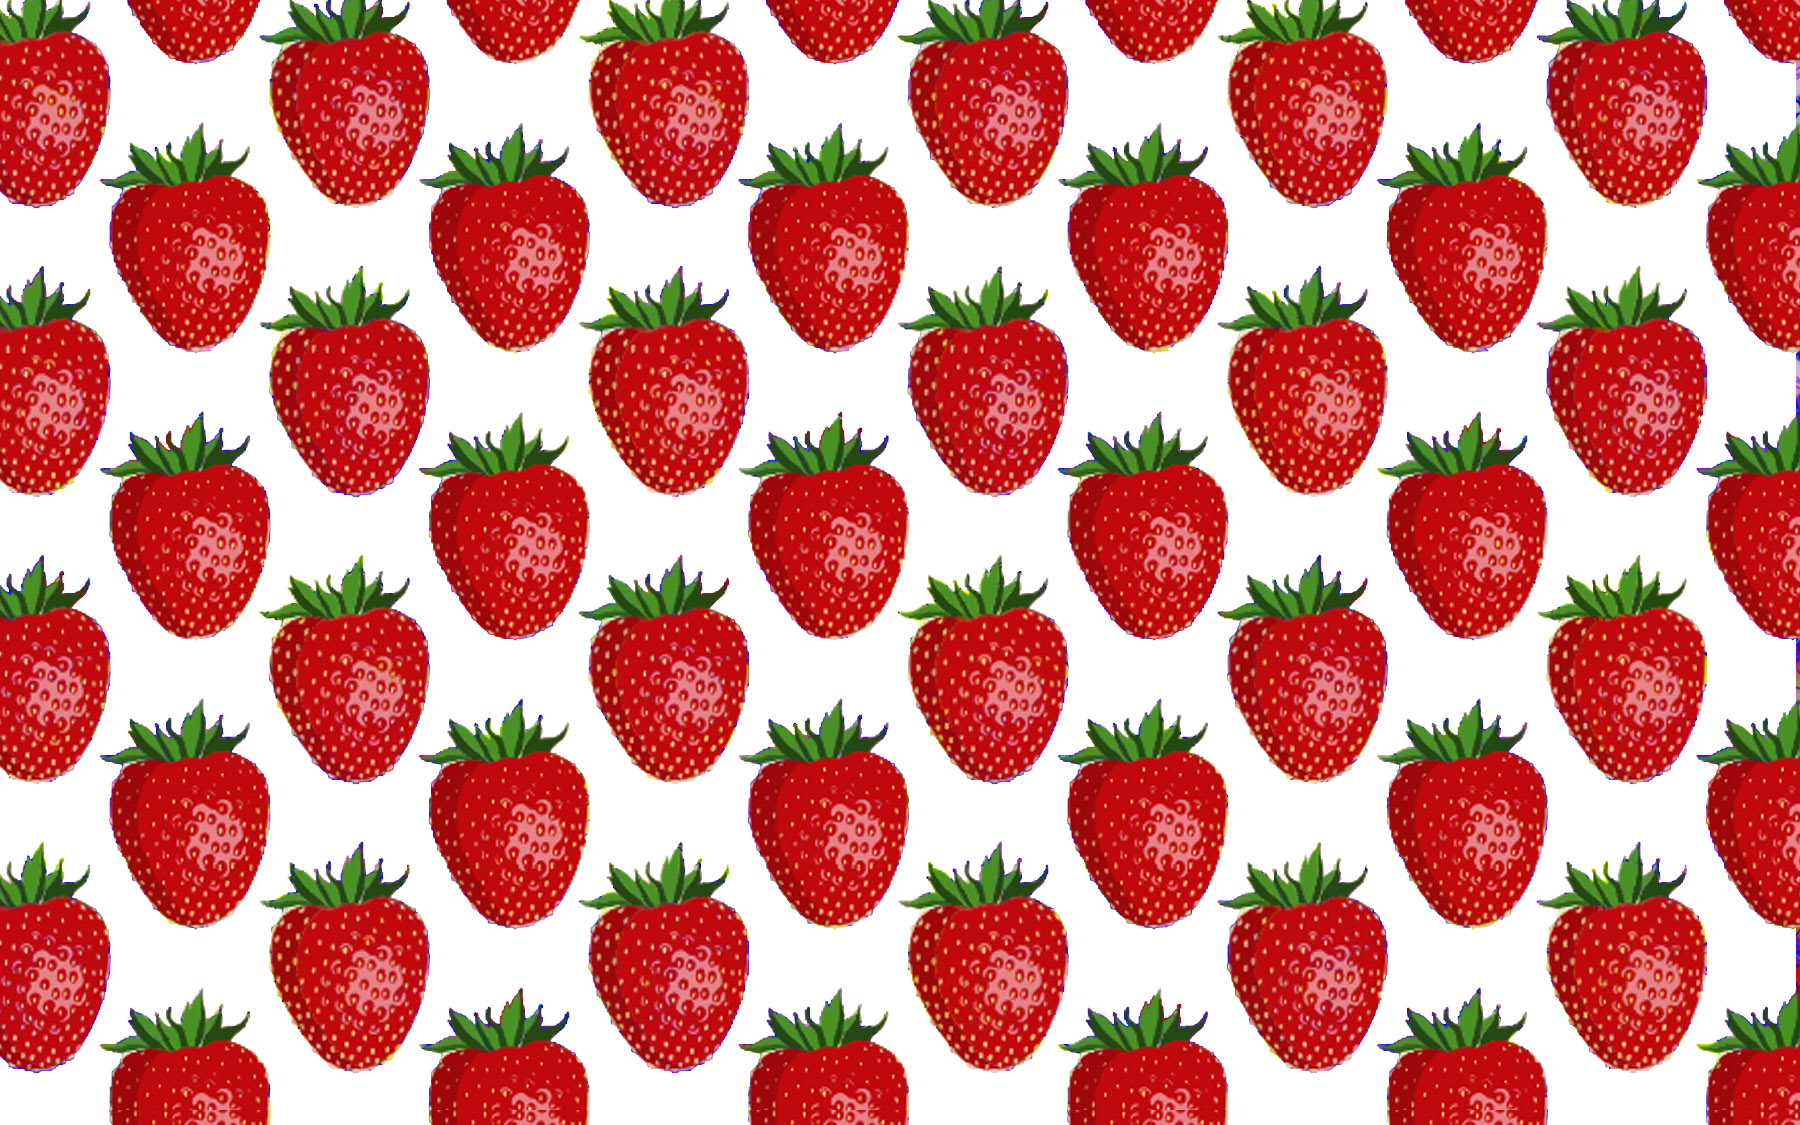 4-inch-strawberry.jpg